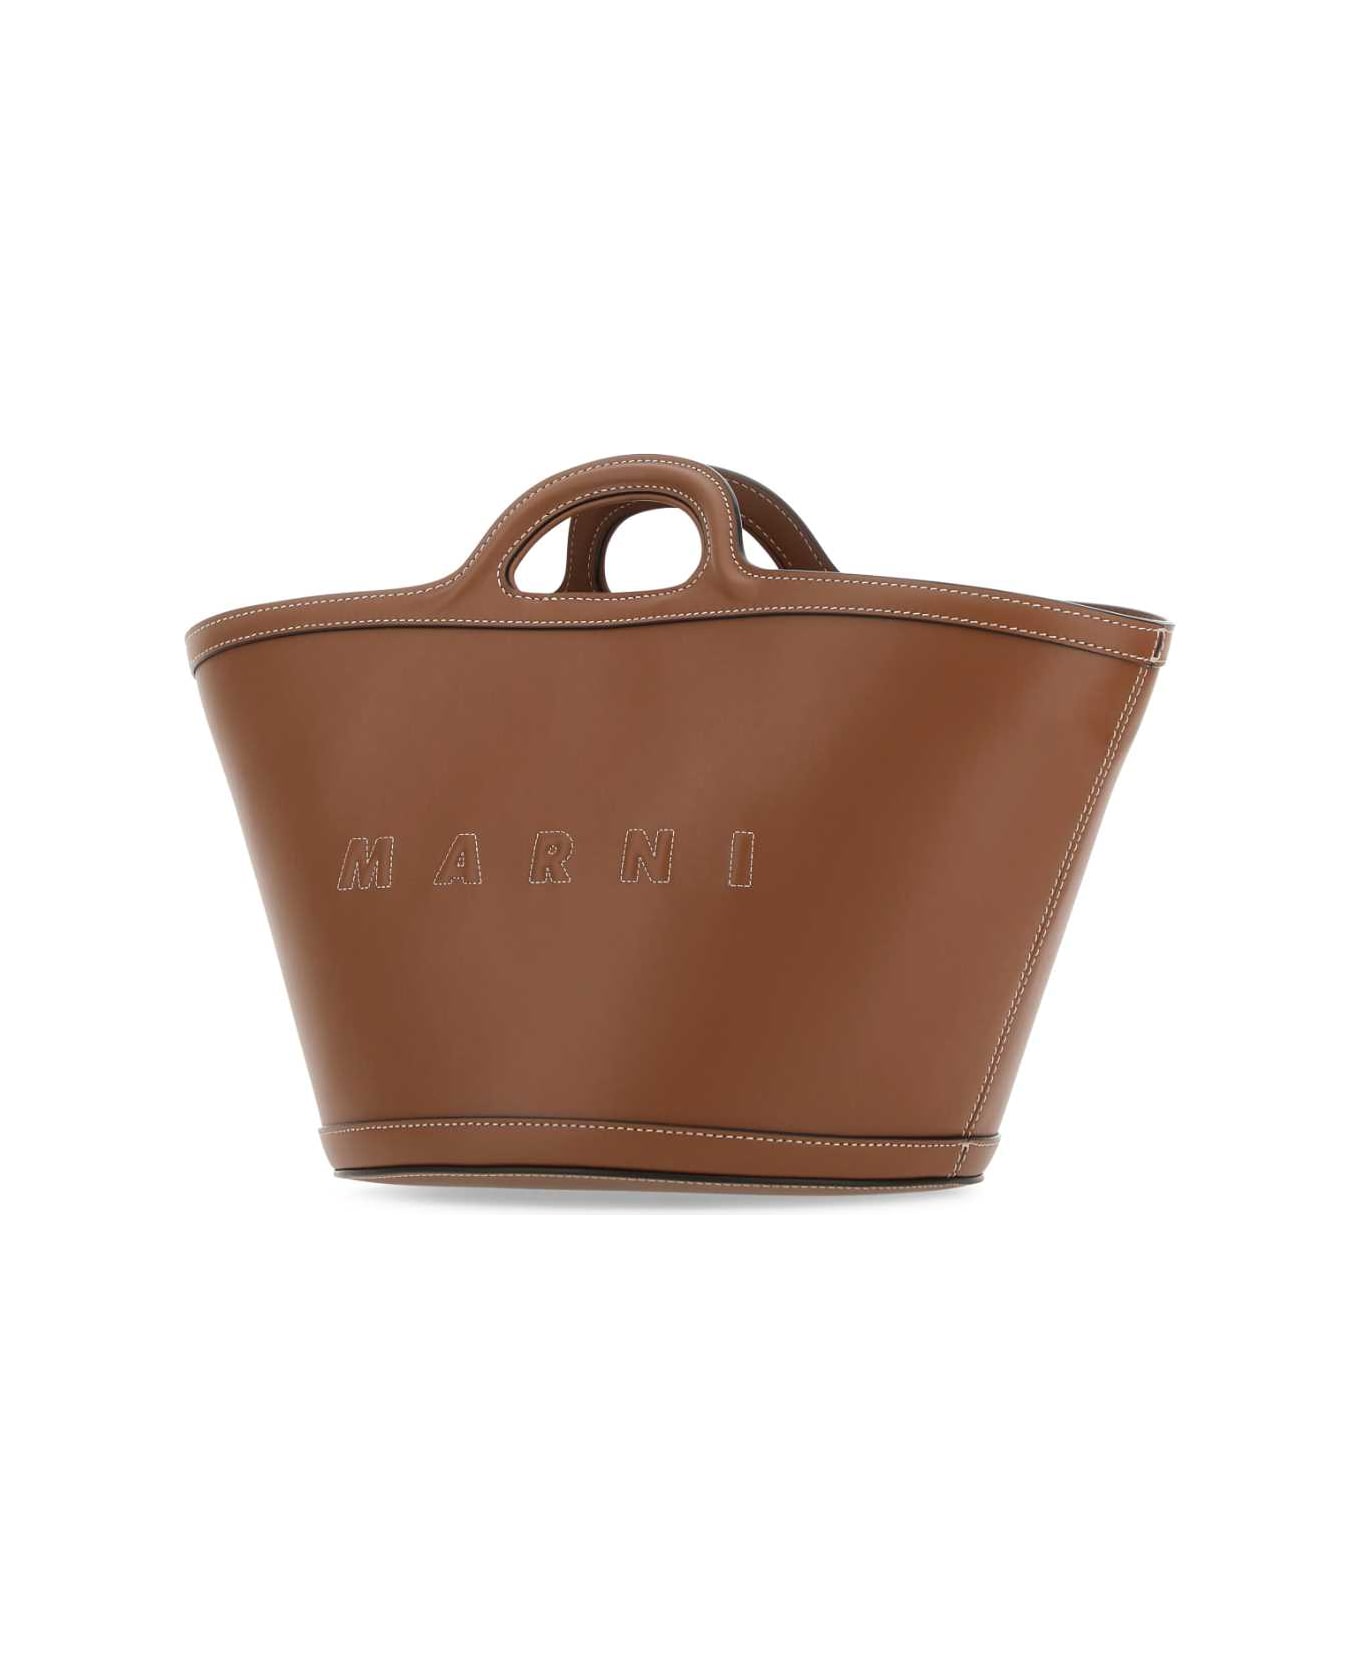 Marni Brown Leather Small Tropicalia Handbag - 00M29